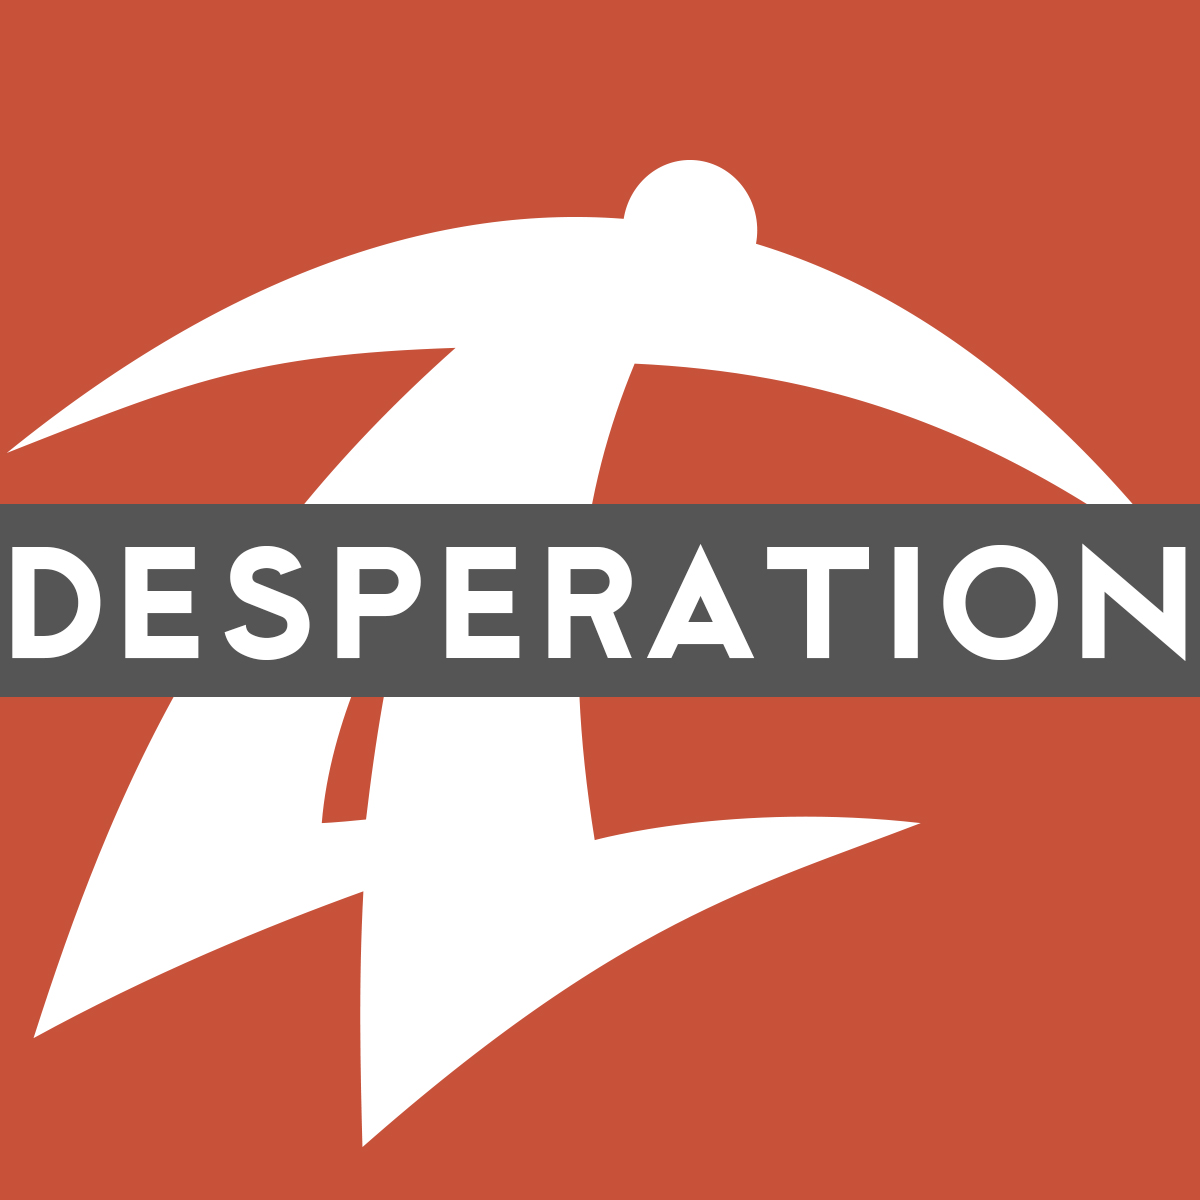 Desperation Conference